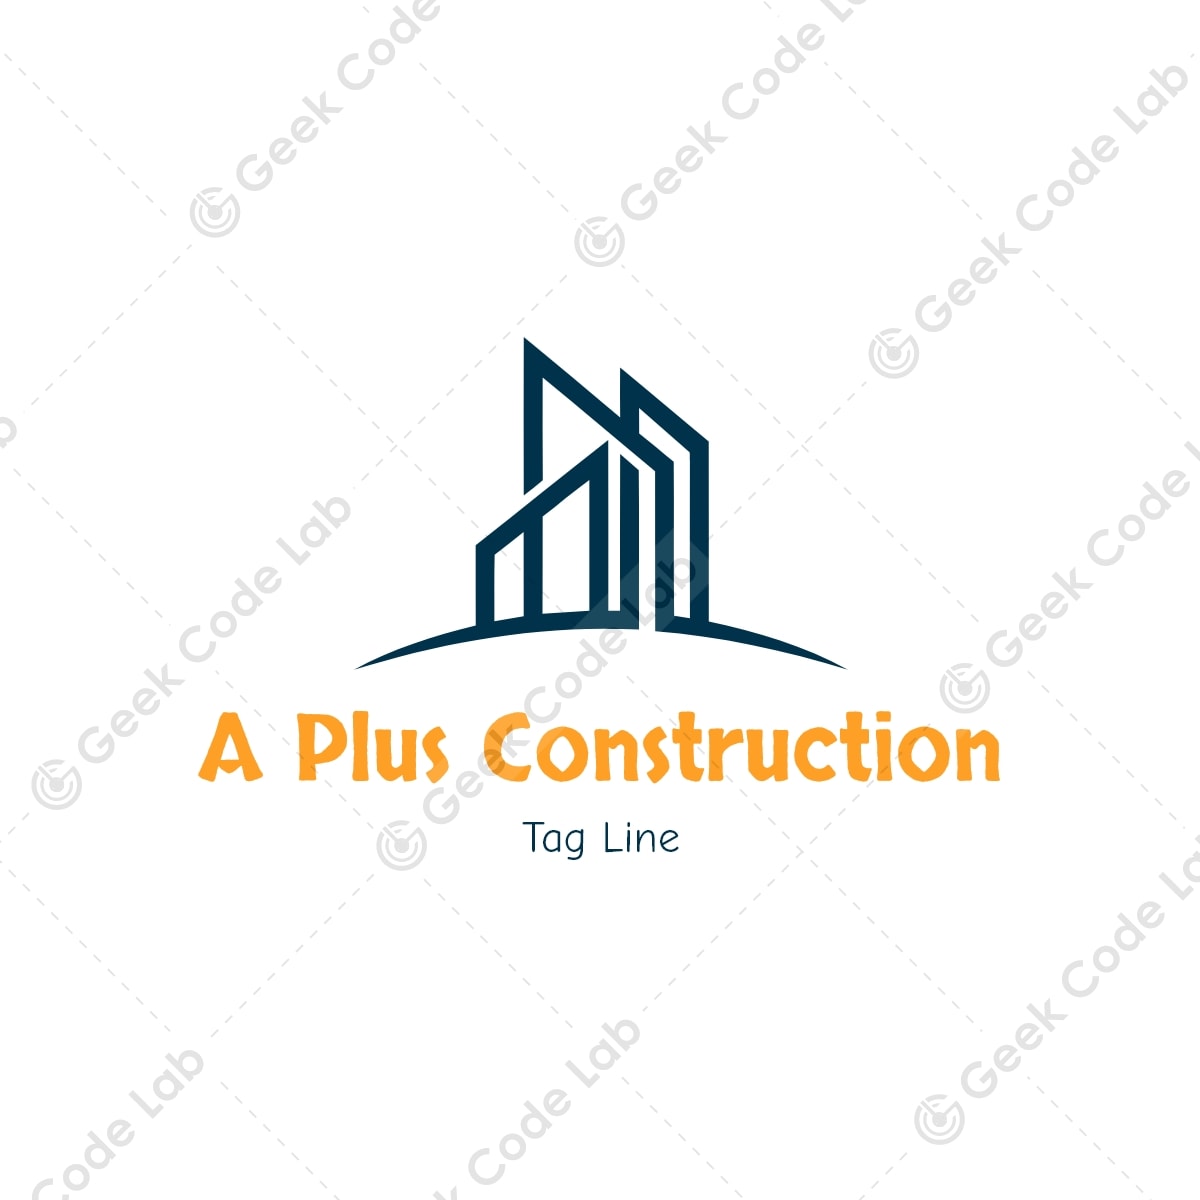 A Plus Construction